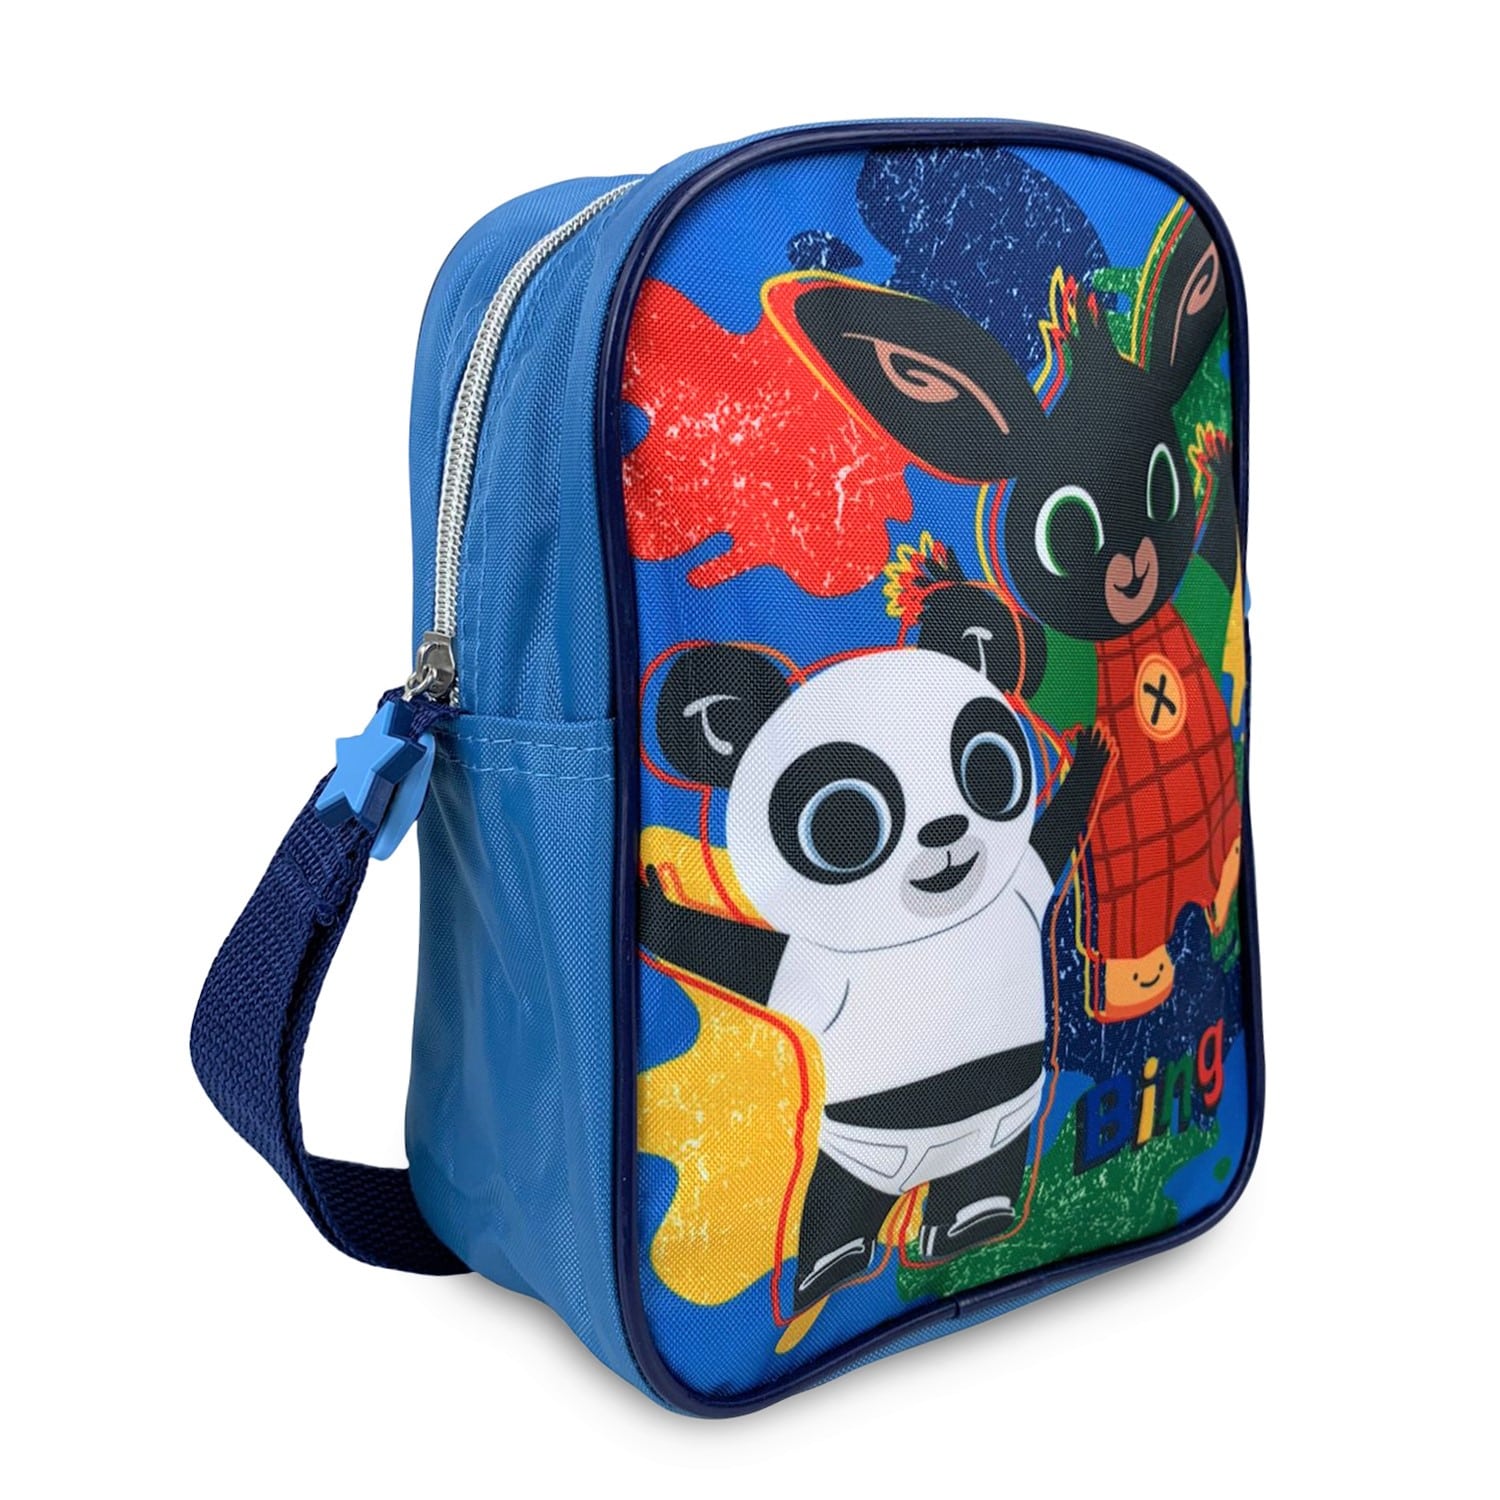 Borsa Bing borsetta tracolla regolabile e zip per bambino Scuola bambini 4310